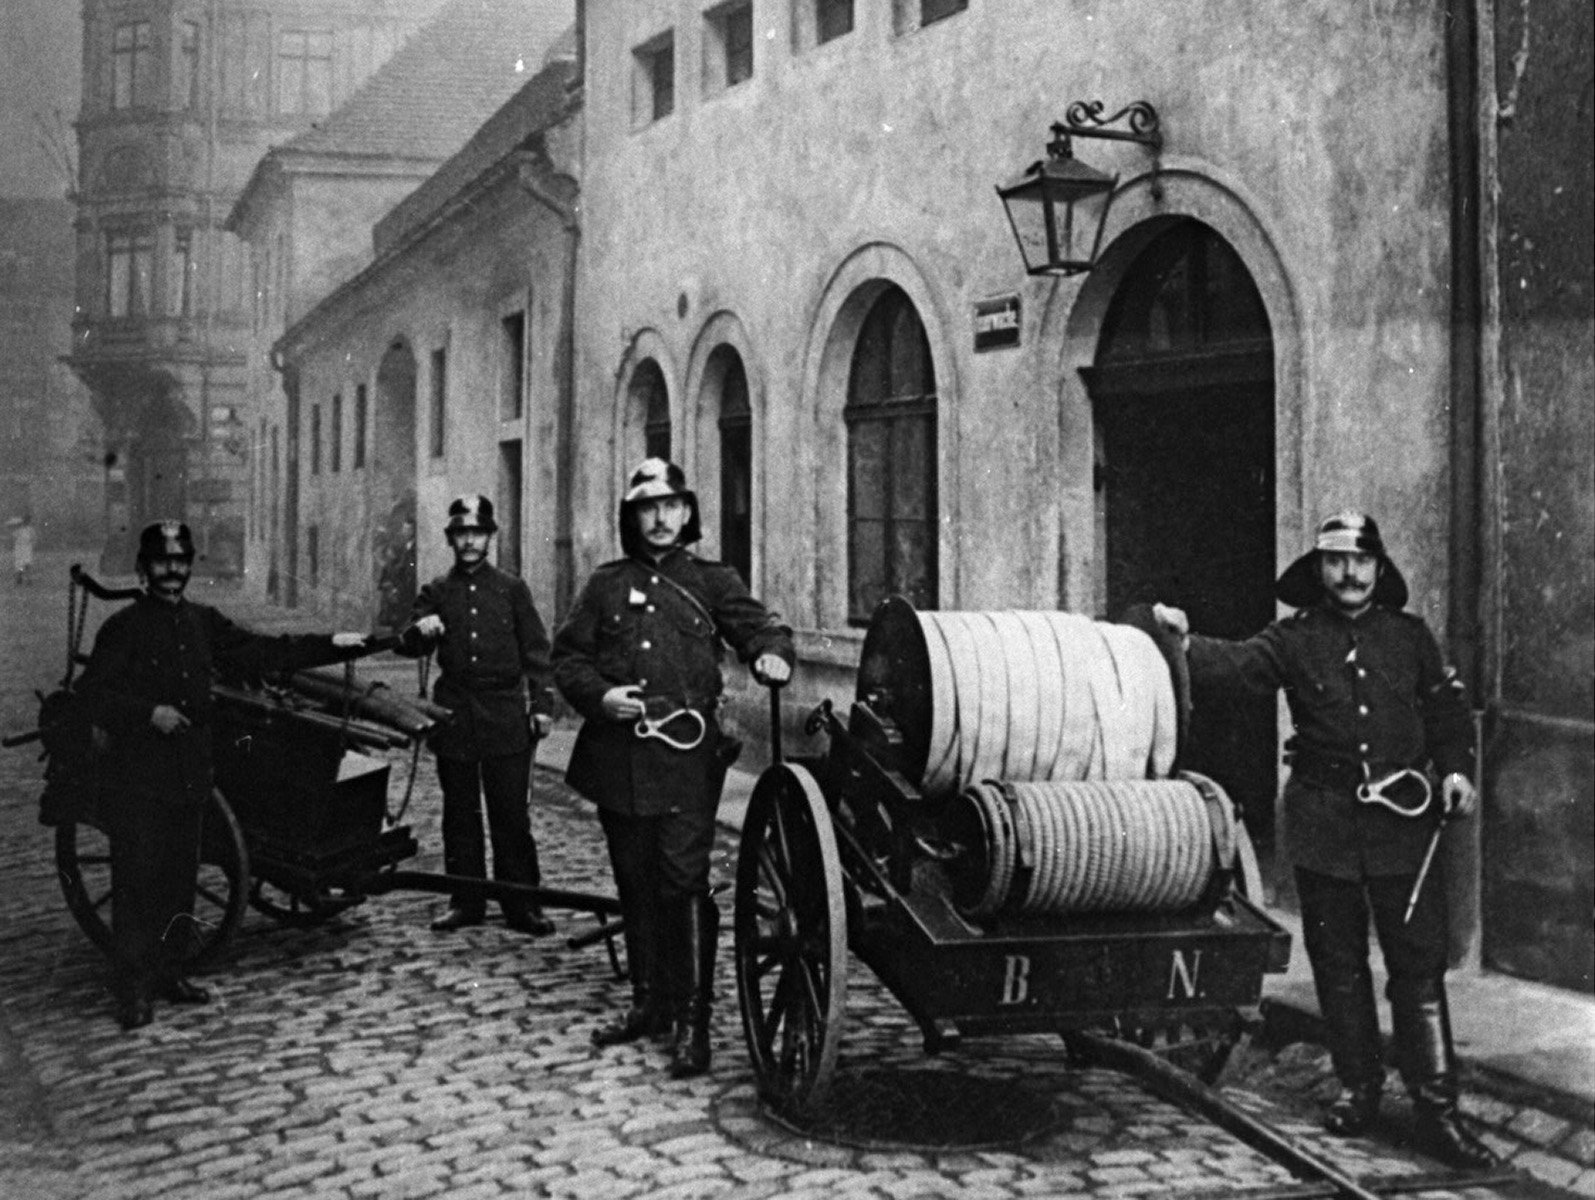 Auf dem historischen Foto sind Feuerwehrleute mit der damals typischen Löschtechnik zu sehen.